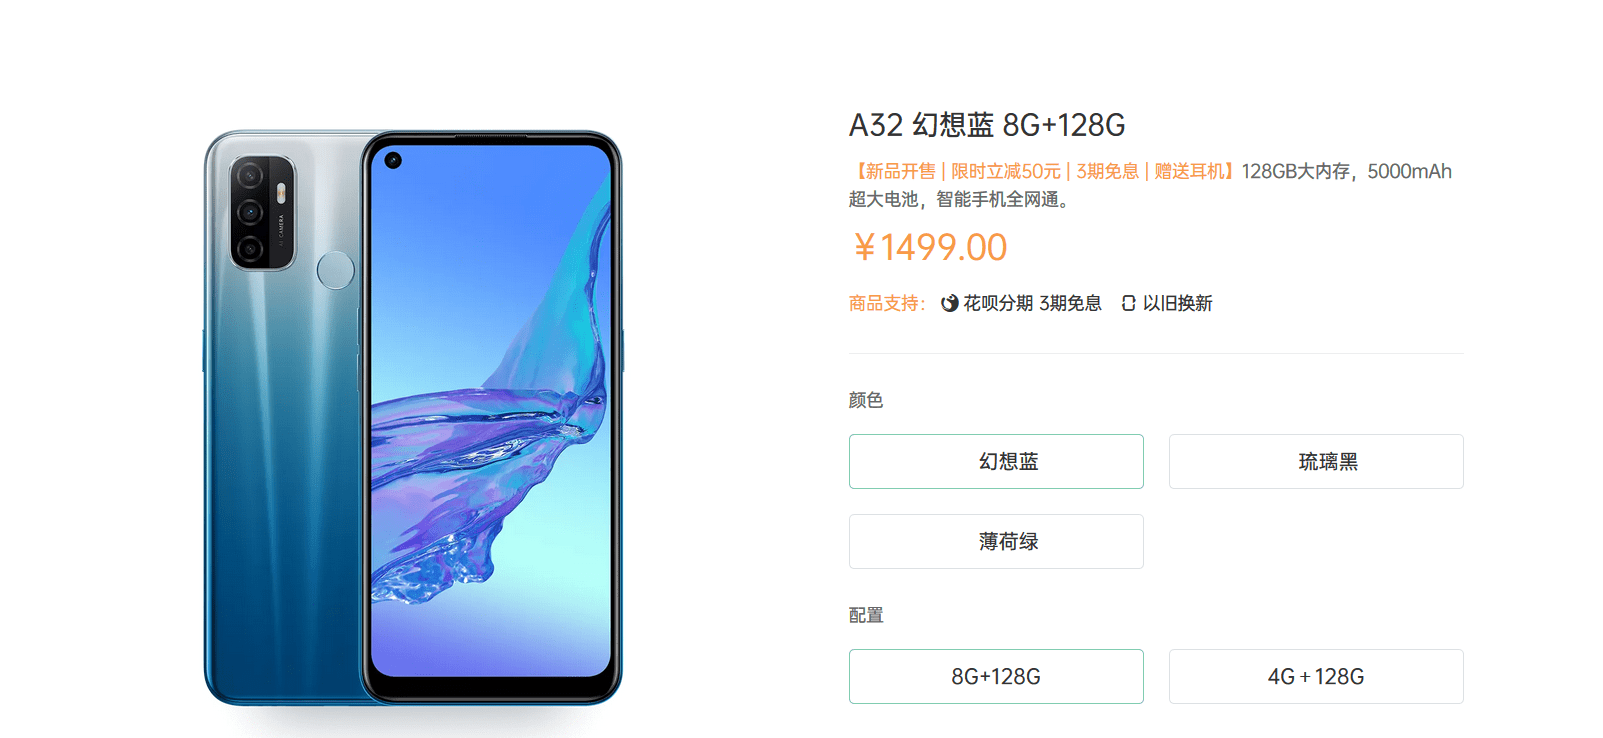 千元高刷屏手机oppo a32开售,这些购机福利你确定不心动吗?